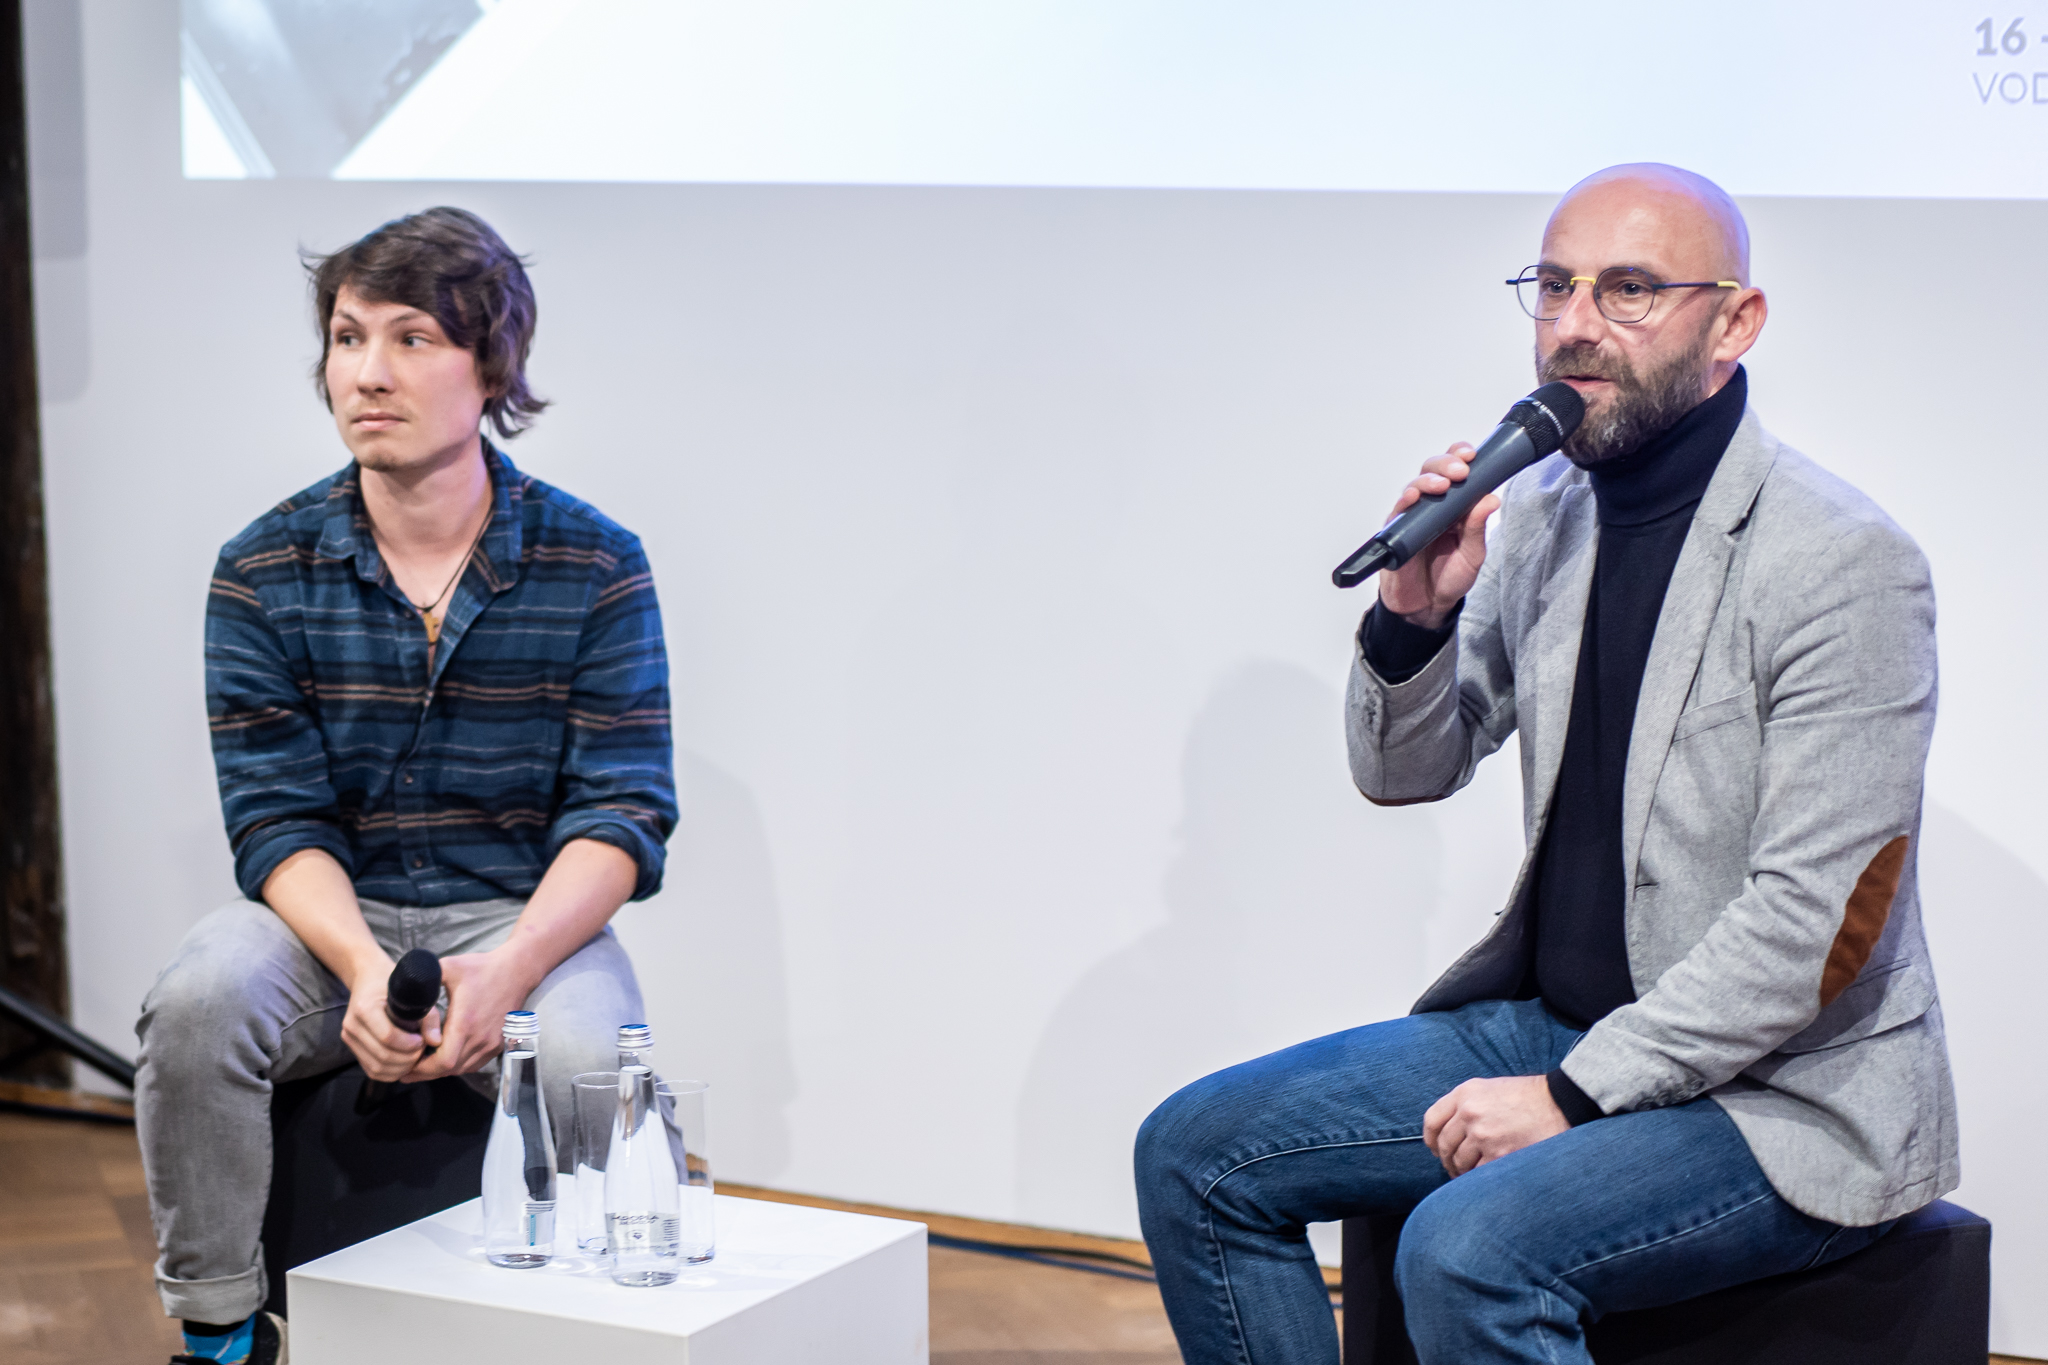 Prezentacje konkursowych reportaży telewizyjnych. Na zdjęciu od lewej: Tomasz Porębski i Marcin Kwintkiewicz, fot. Asia Karp.